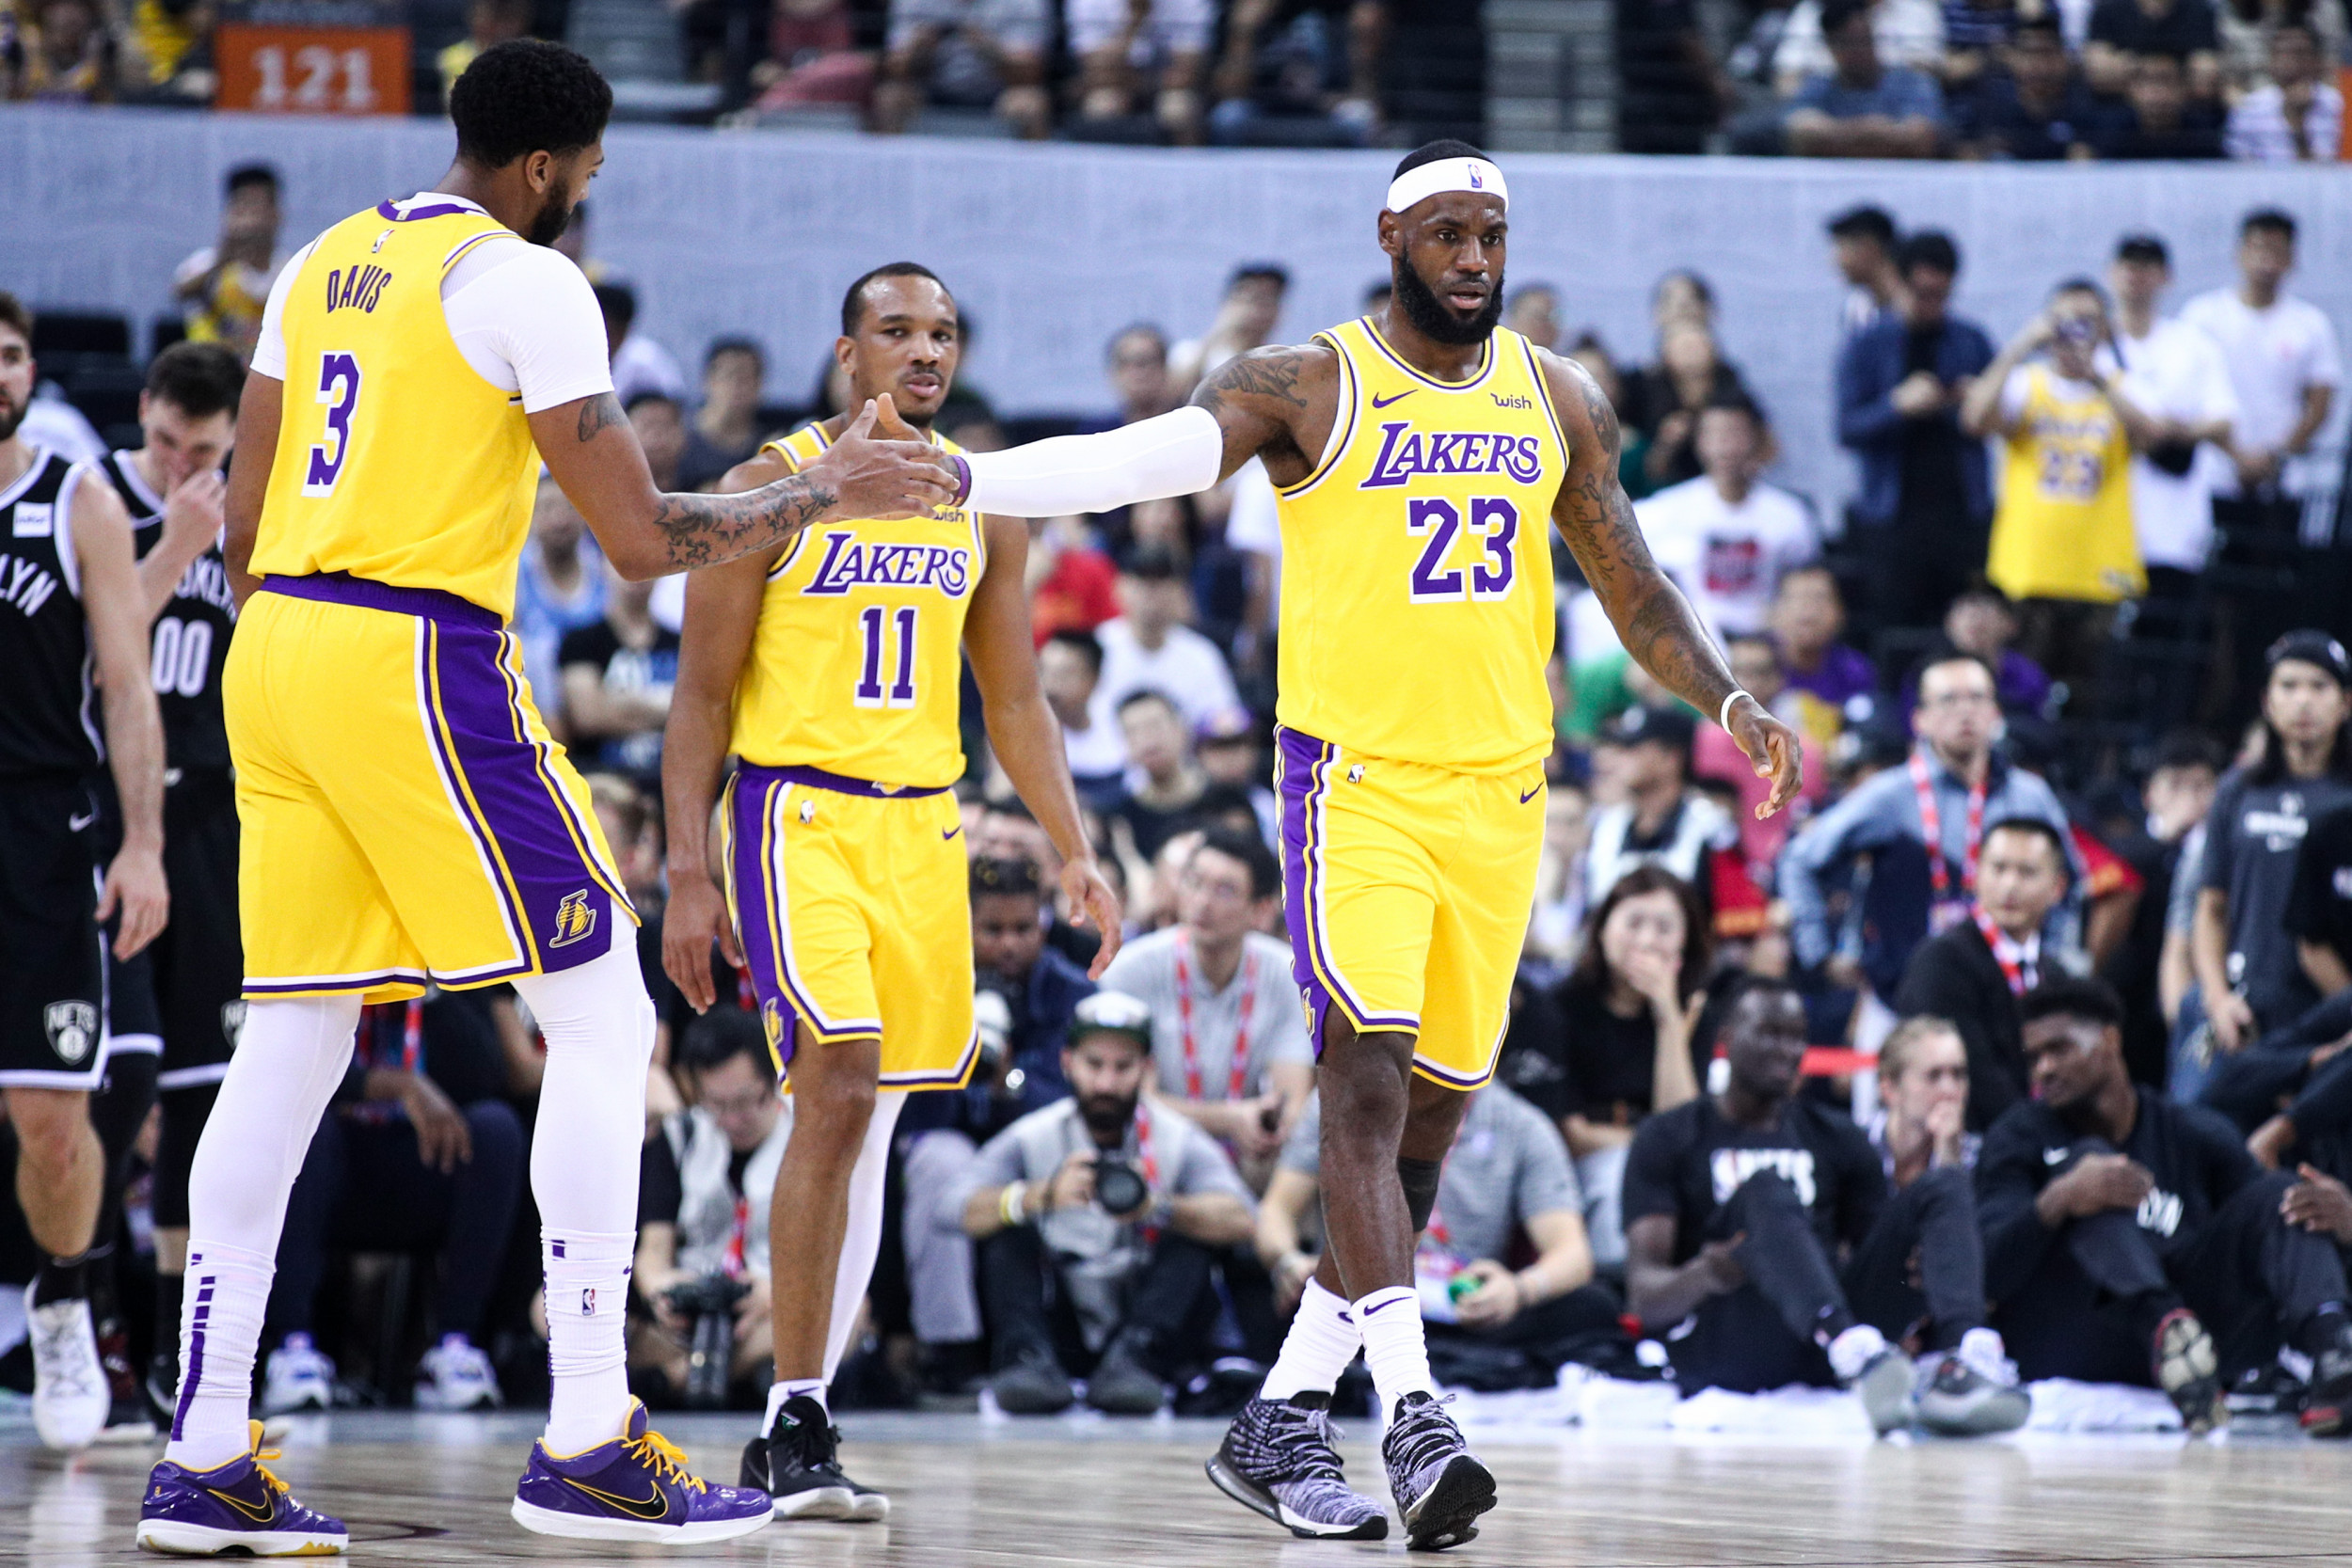 Warriors-Lakers schedule: Start times, TV schedule